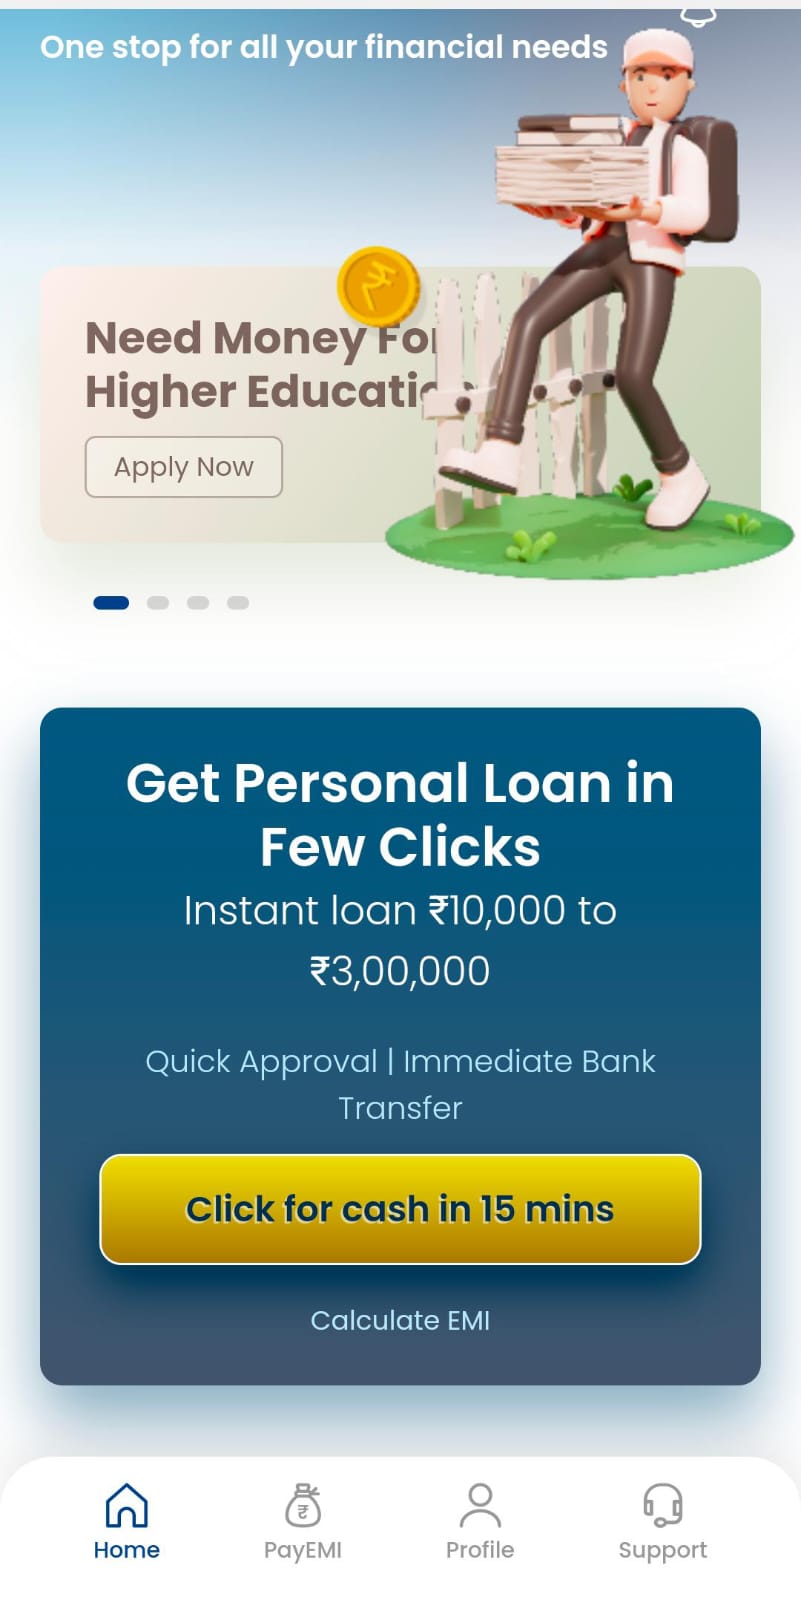 अर्जेंट पैसों कि जरुरत है, तो जानिए कैसे मिलेगा एक मिनट मे लोन | Chola Personal Loan